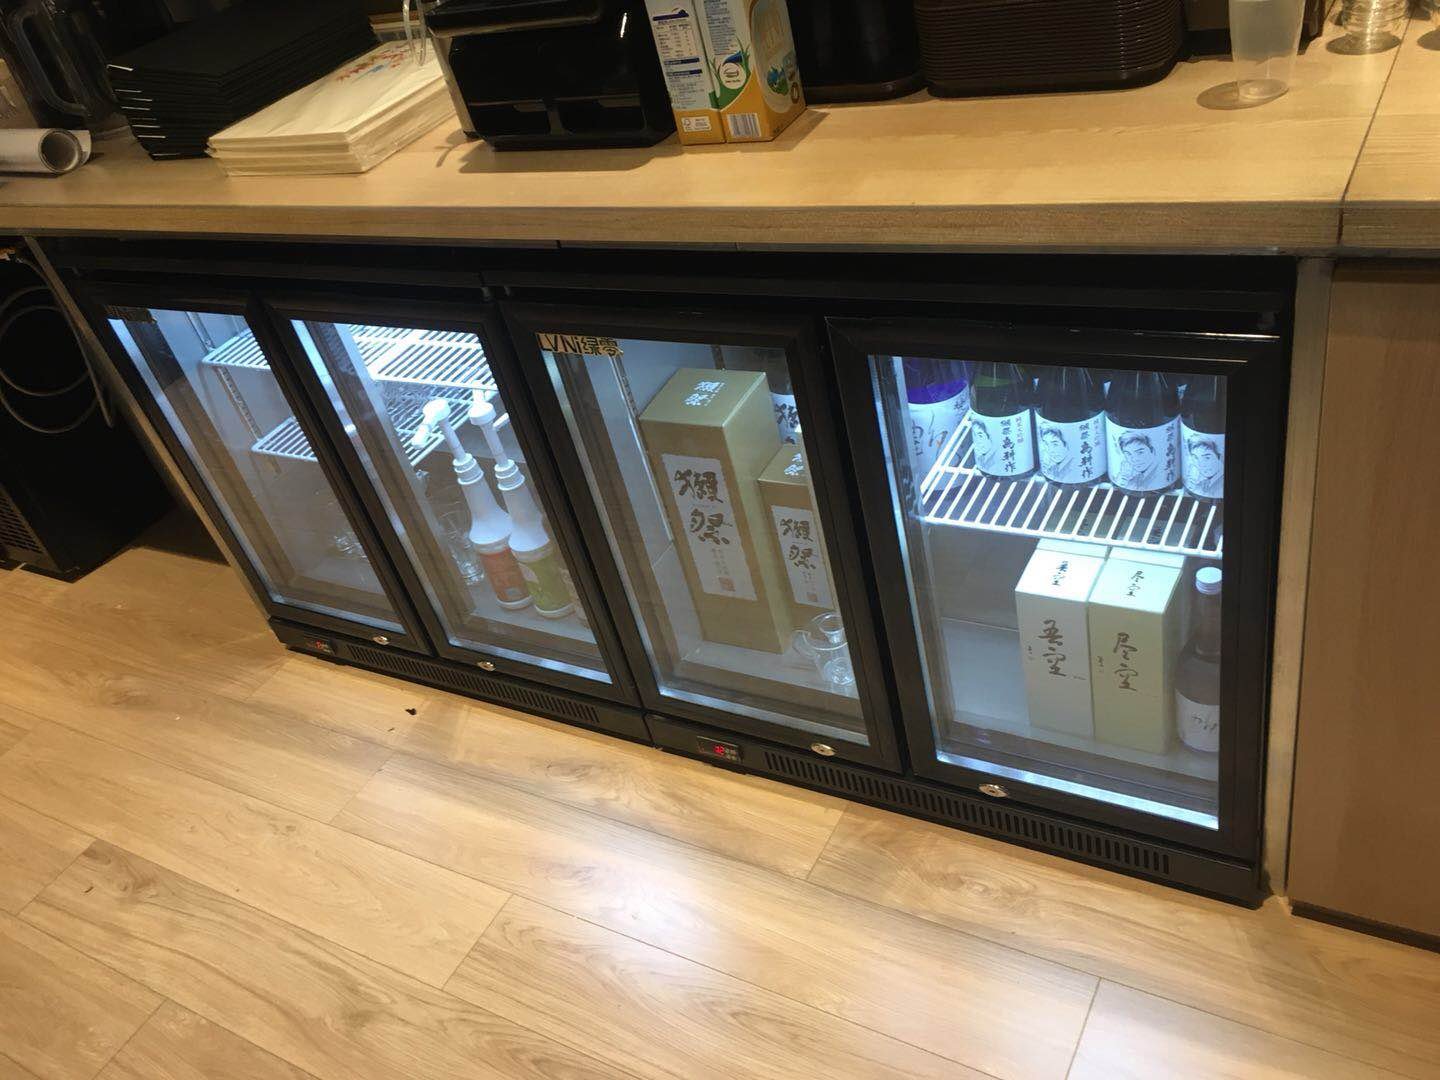 Commercial refrigerator 丨underbar refrigeration